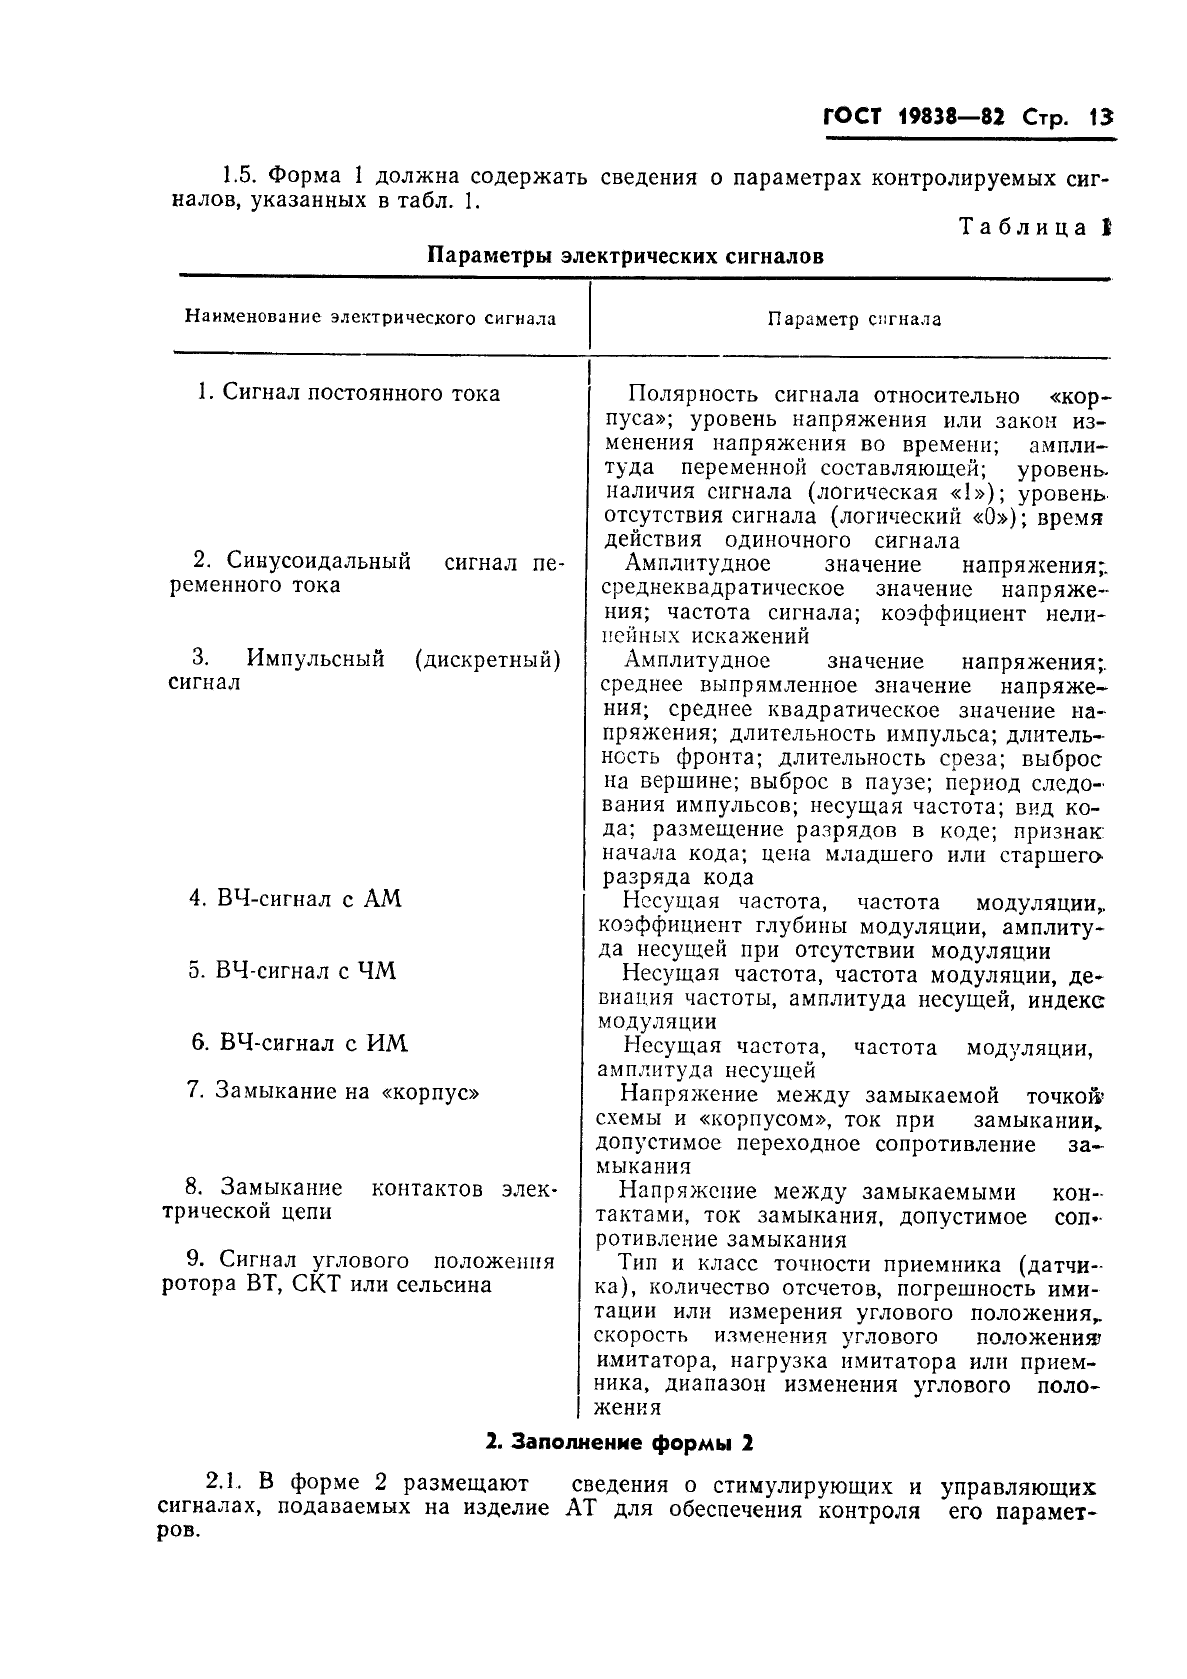 ГОСТ 19838-82 Характеристика контролепригодности изделий авиационной техники. Правила изложения и оформления (фото 14 из 21)